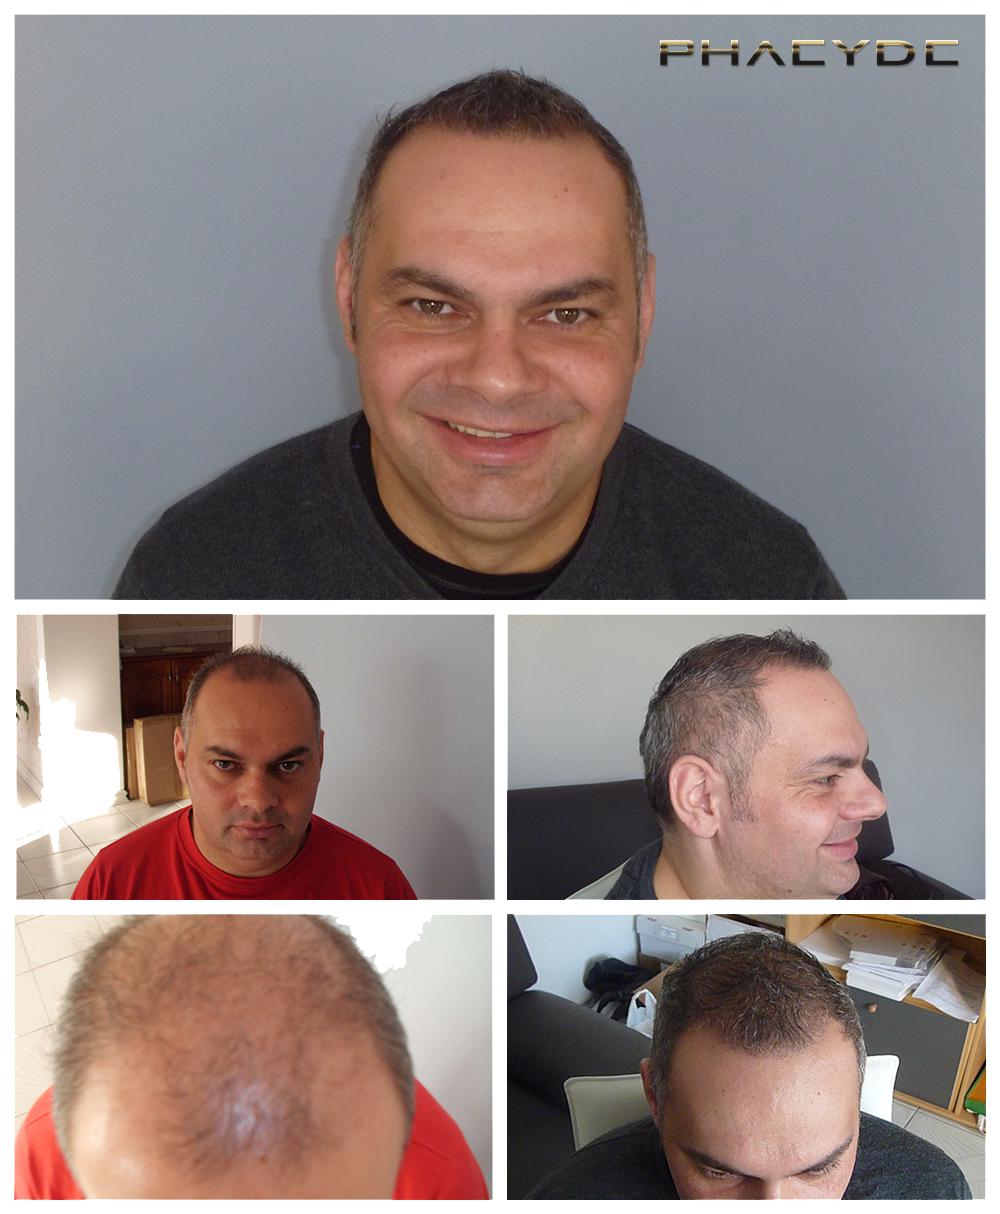 Transplante de cabello fue pelo resultados antes despues imagenes zoltan lencse - PHAEYDE Clínica